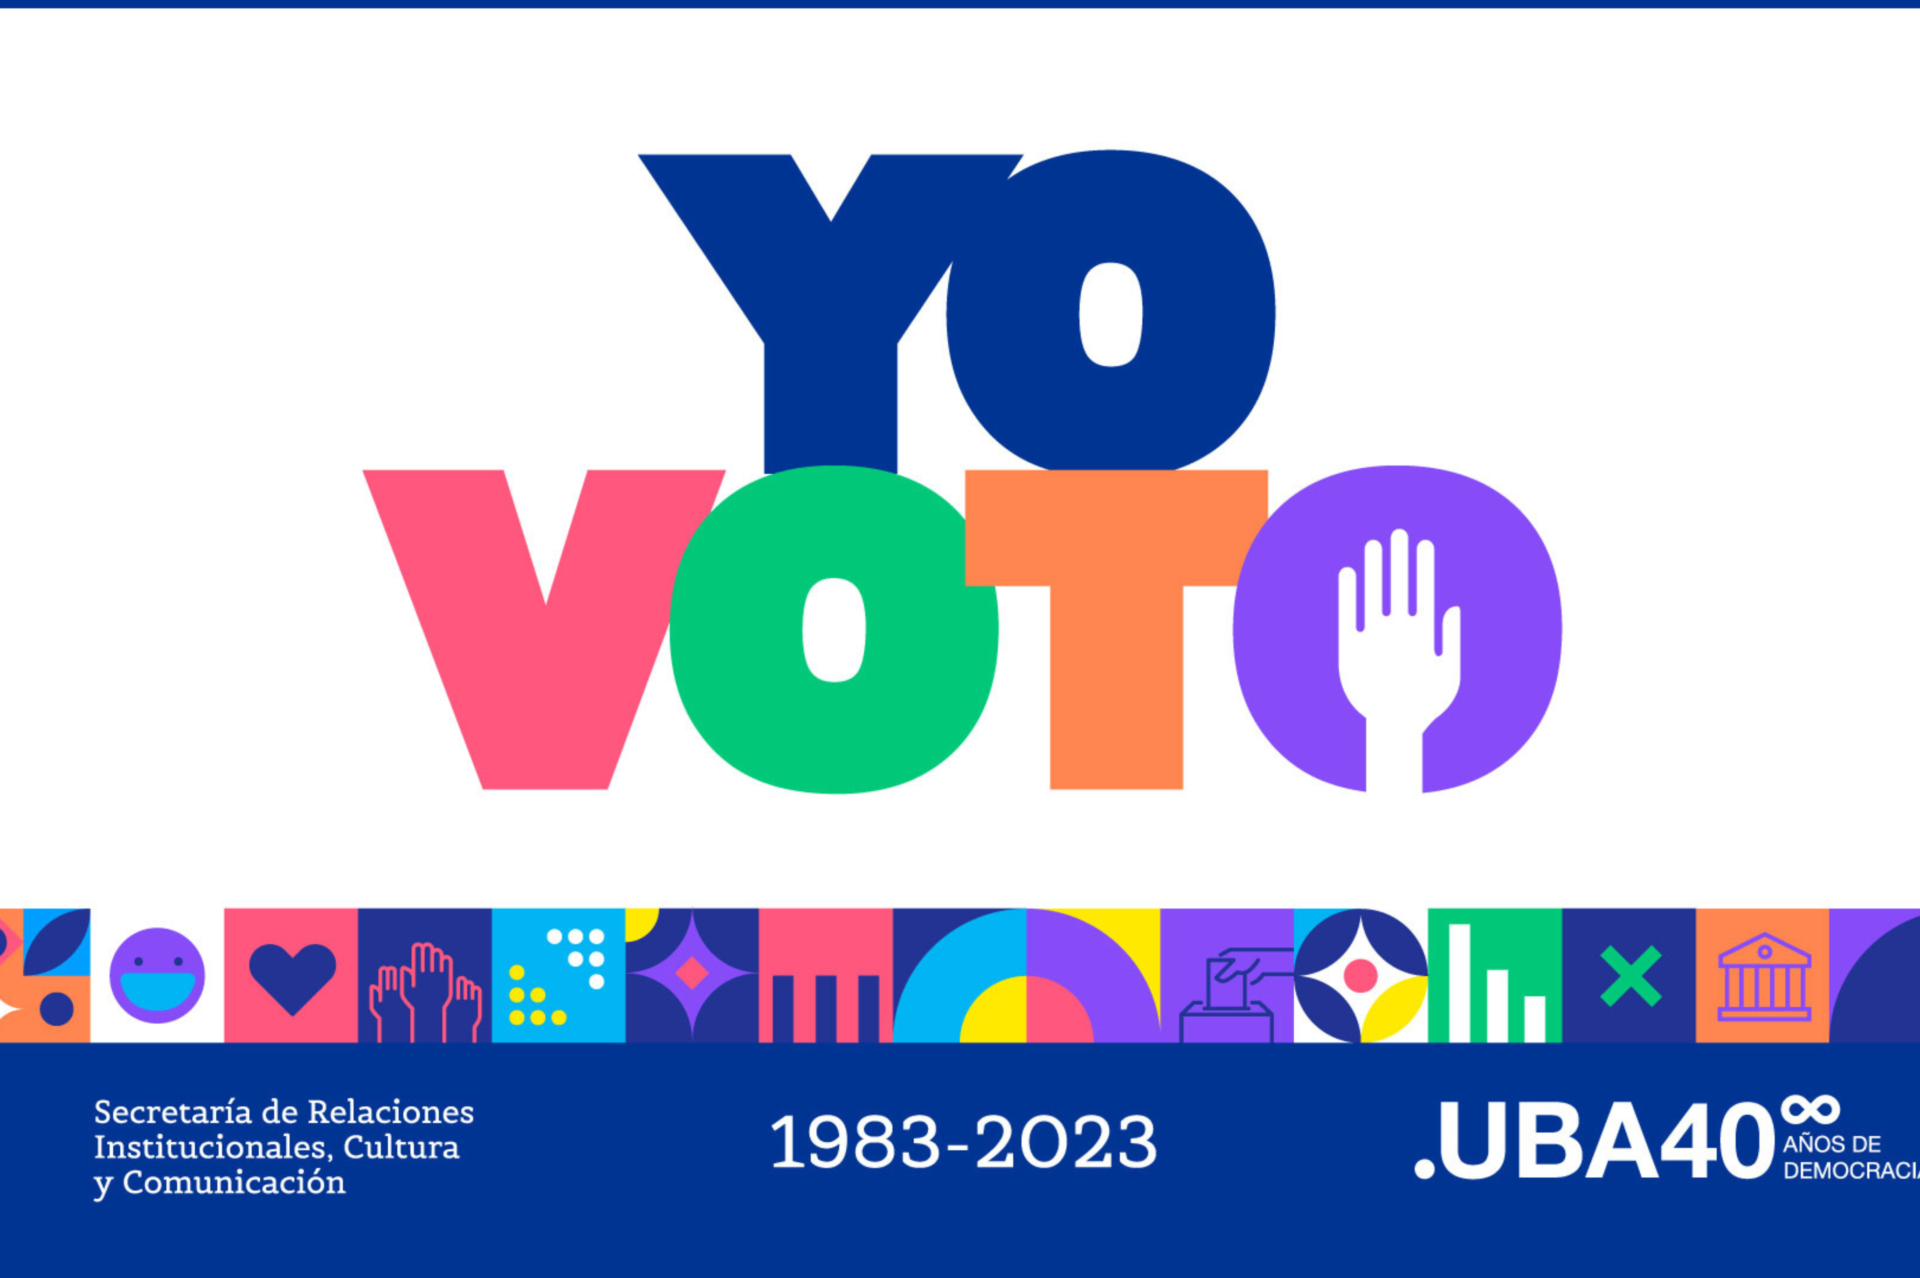 Mi voto cuenta: la campaña de Amnistía Internacional y la de la UBA buscan incentivar el voto joven